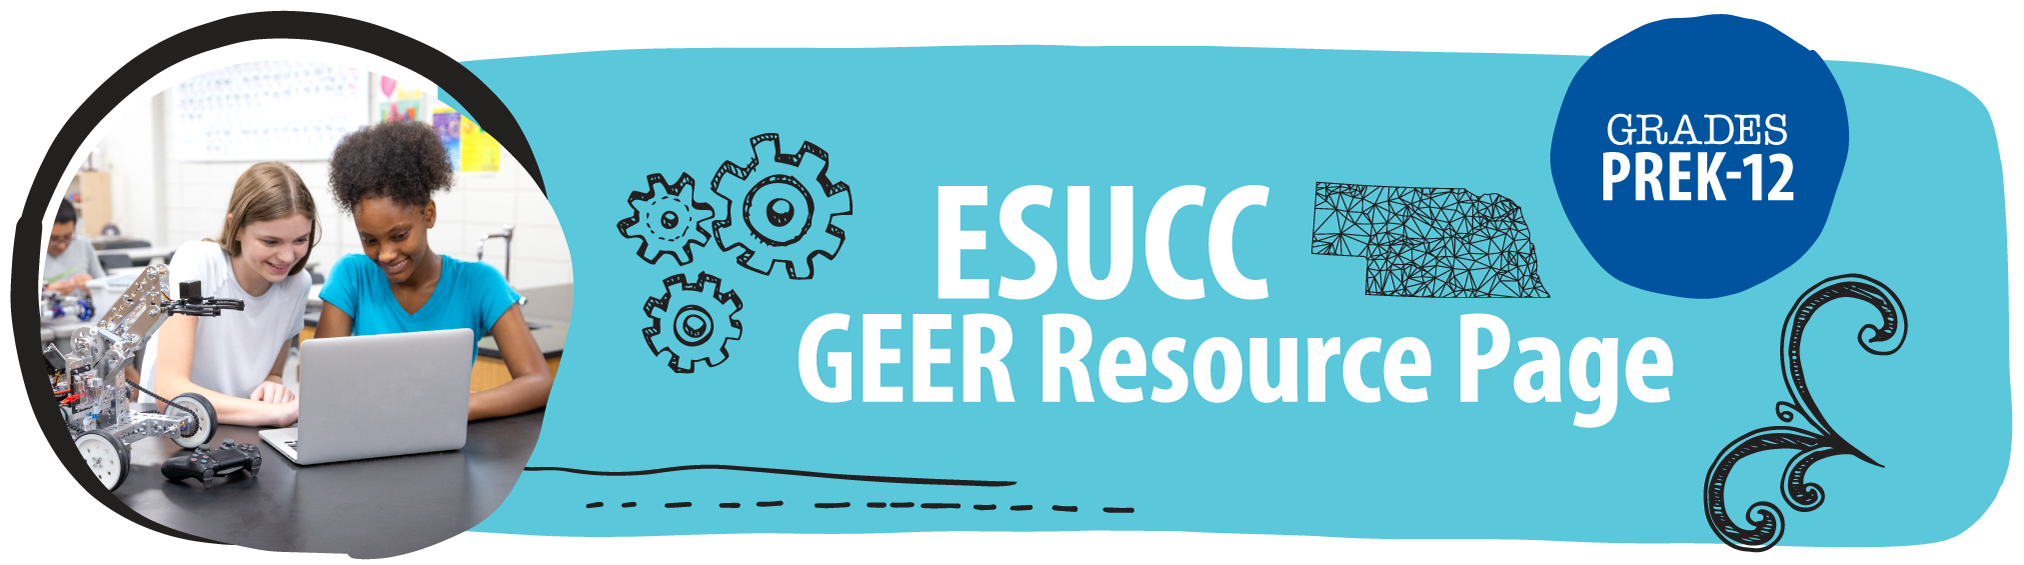 ESUCC GEER Resource Page